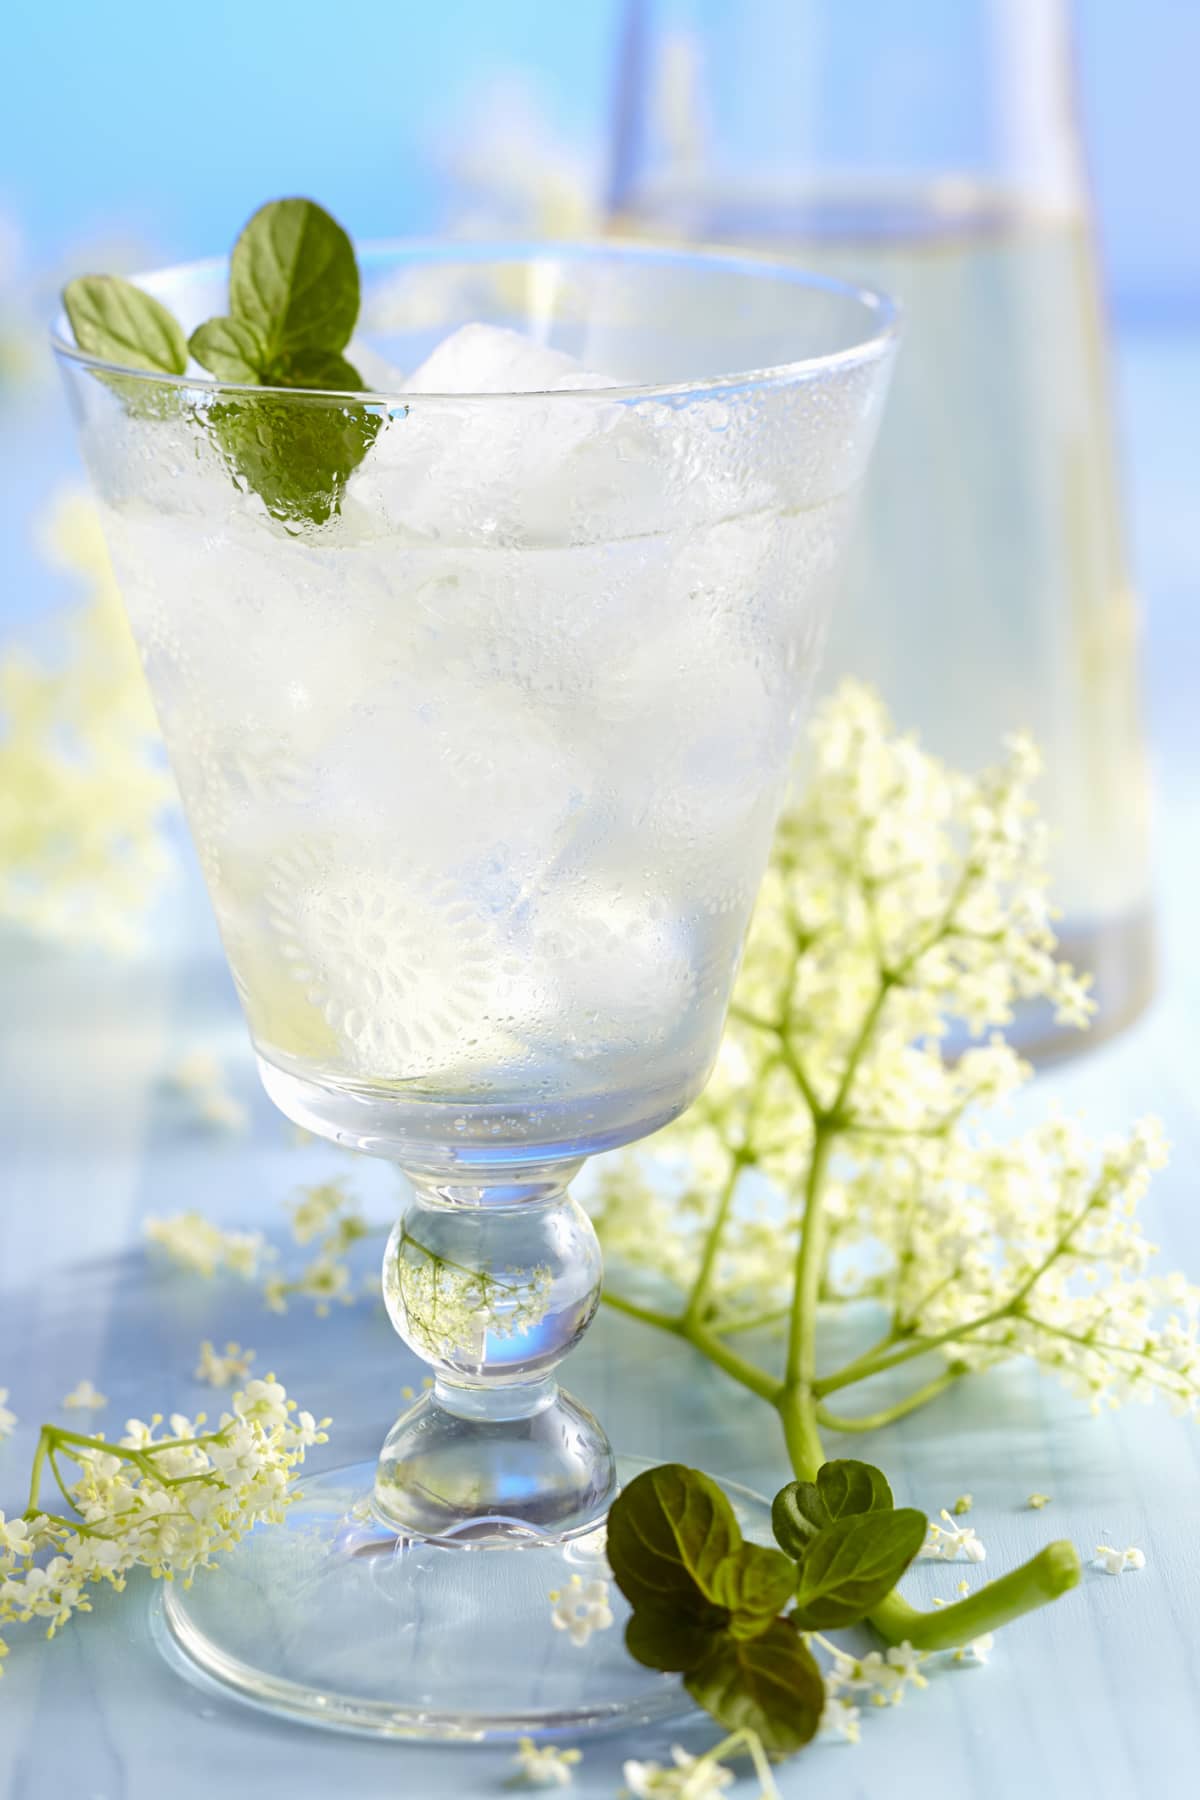 Clear elderflower cocktail with mint garnish